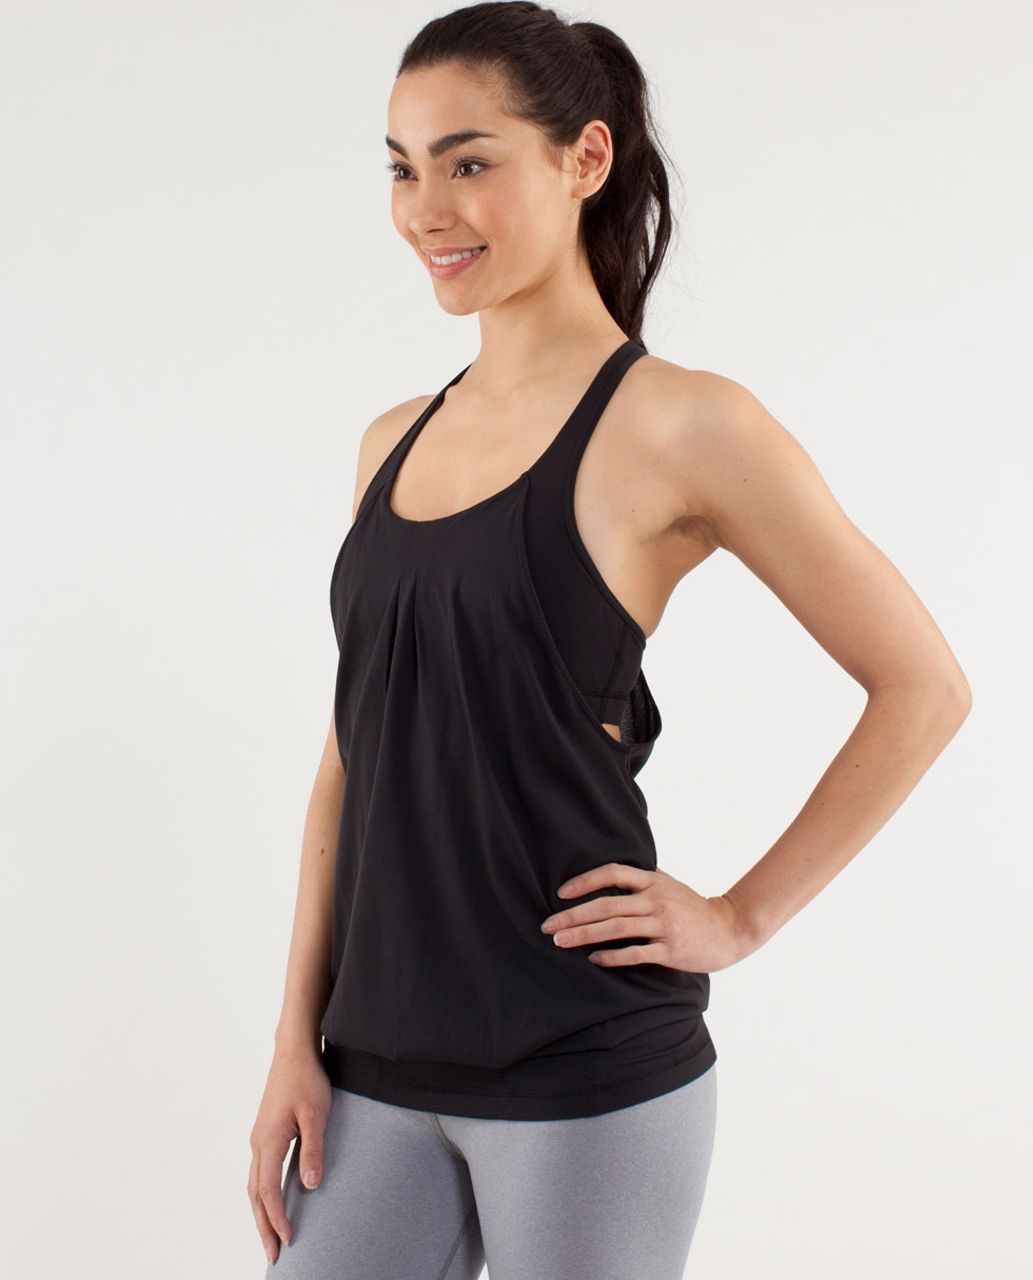 NWOT Lululemon Sleeveless InStill Black Yoga Running Tank Top sz.10  Built-in bra